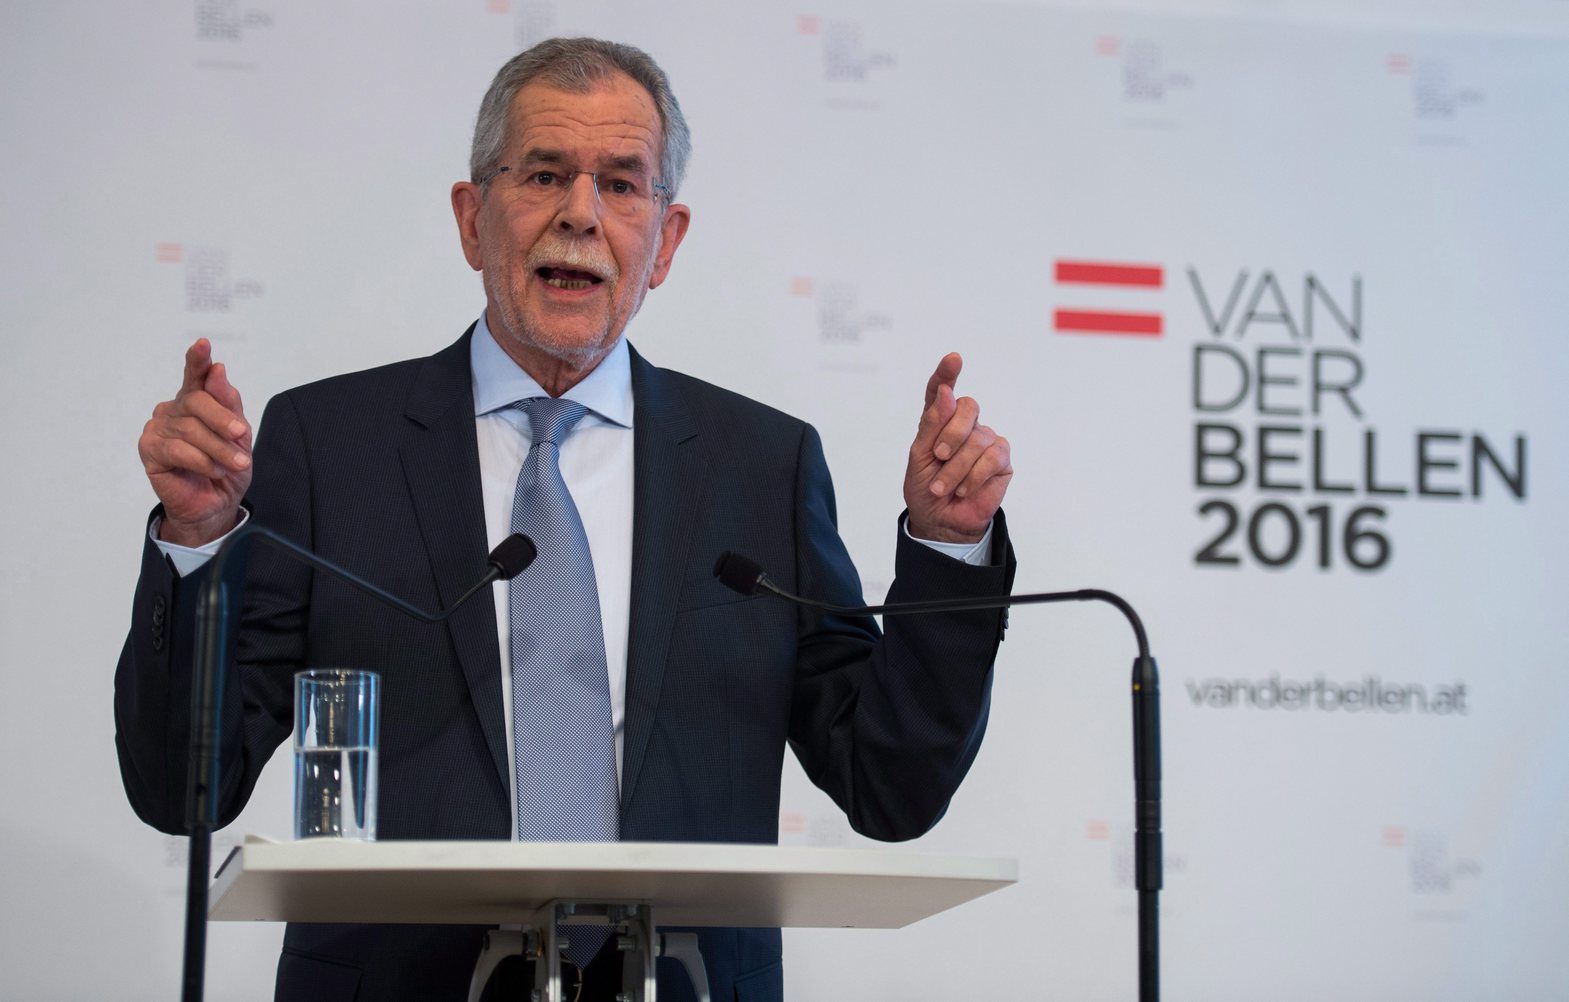 Cseh kormányfő: Van der Bellen győzelme felhívás a nyíltságra és türelemre